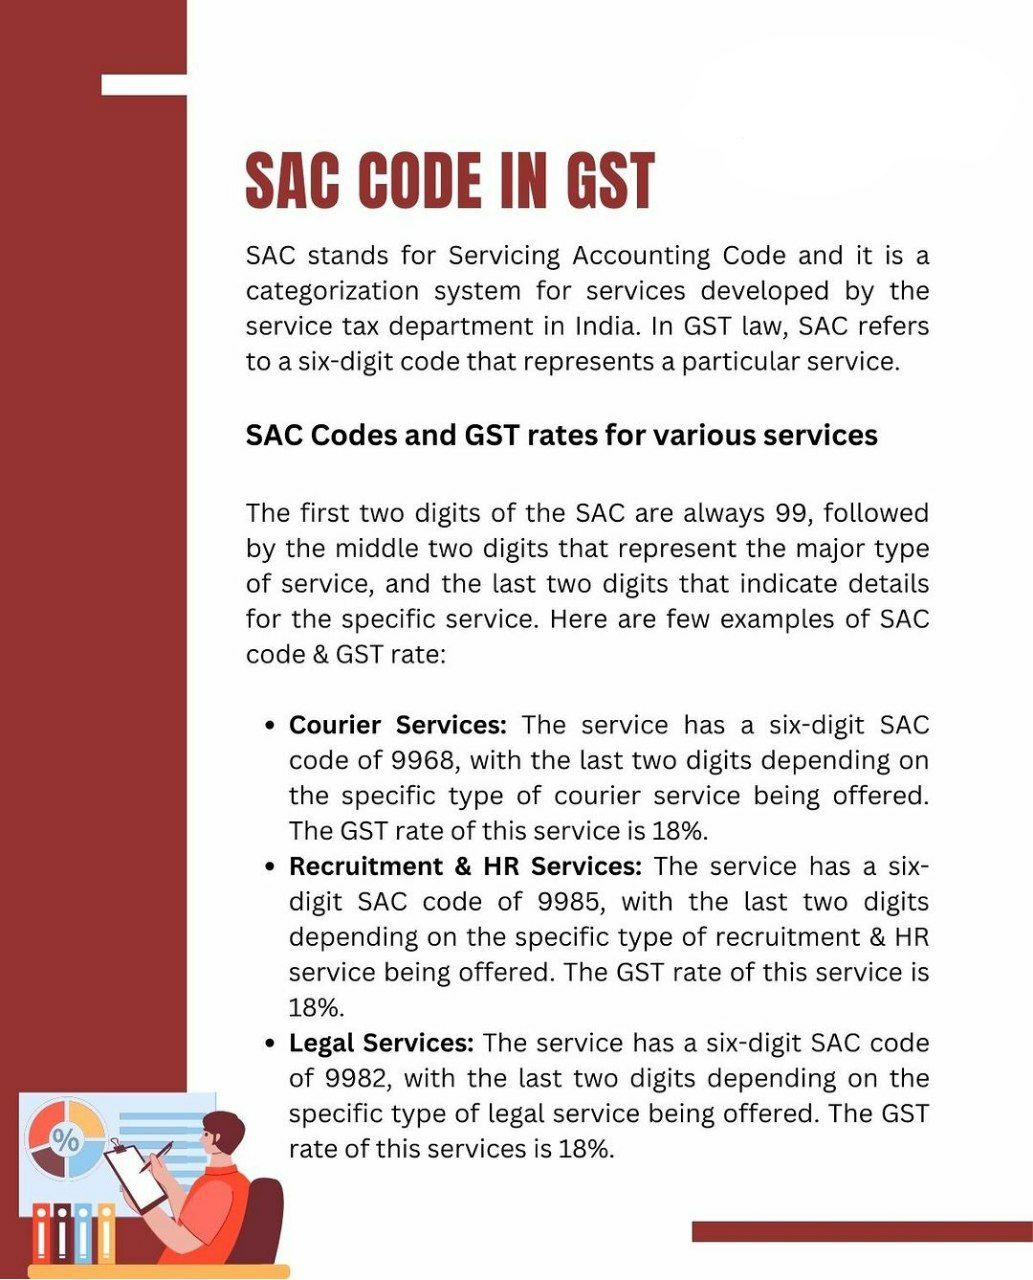 SAC code under GST